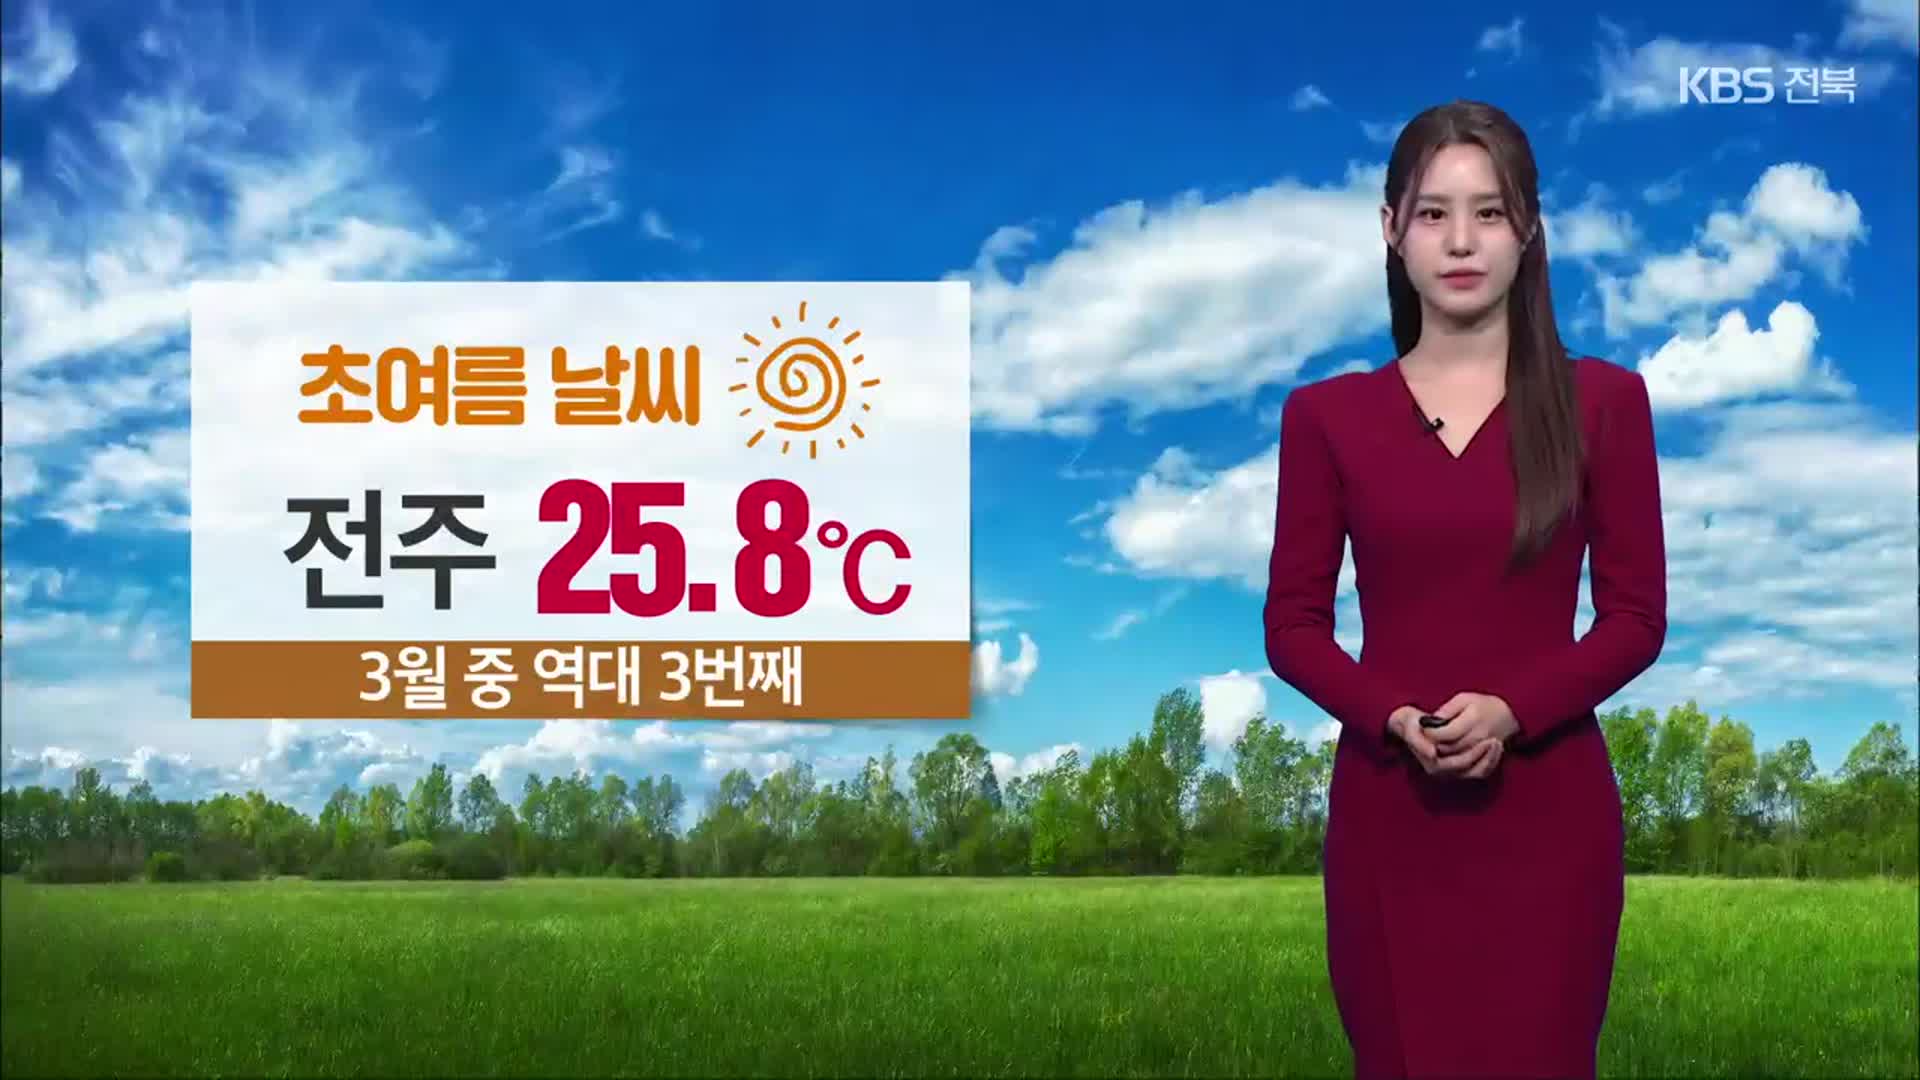 [날씨] ‘전주 25.8도’ 초여름 더위…전북 내일 낮까지 가끔 비